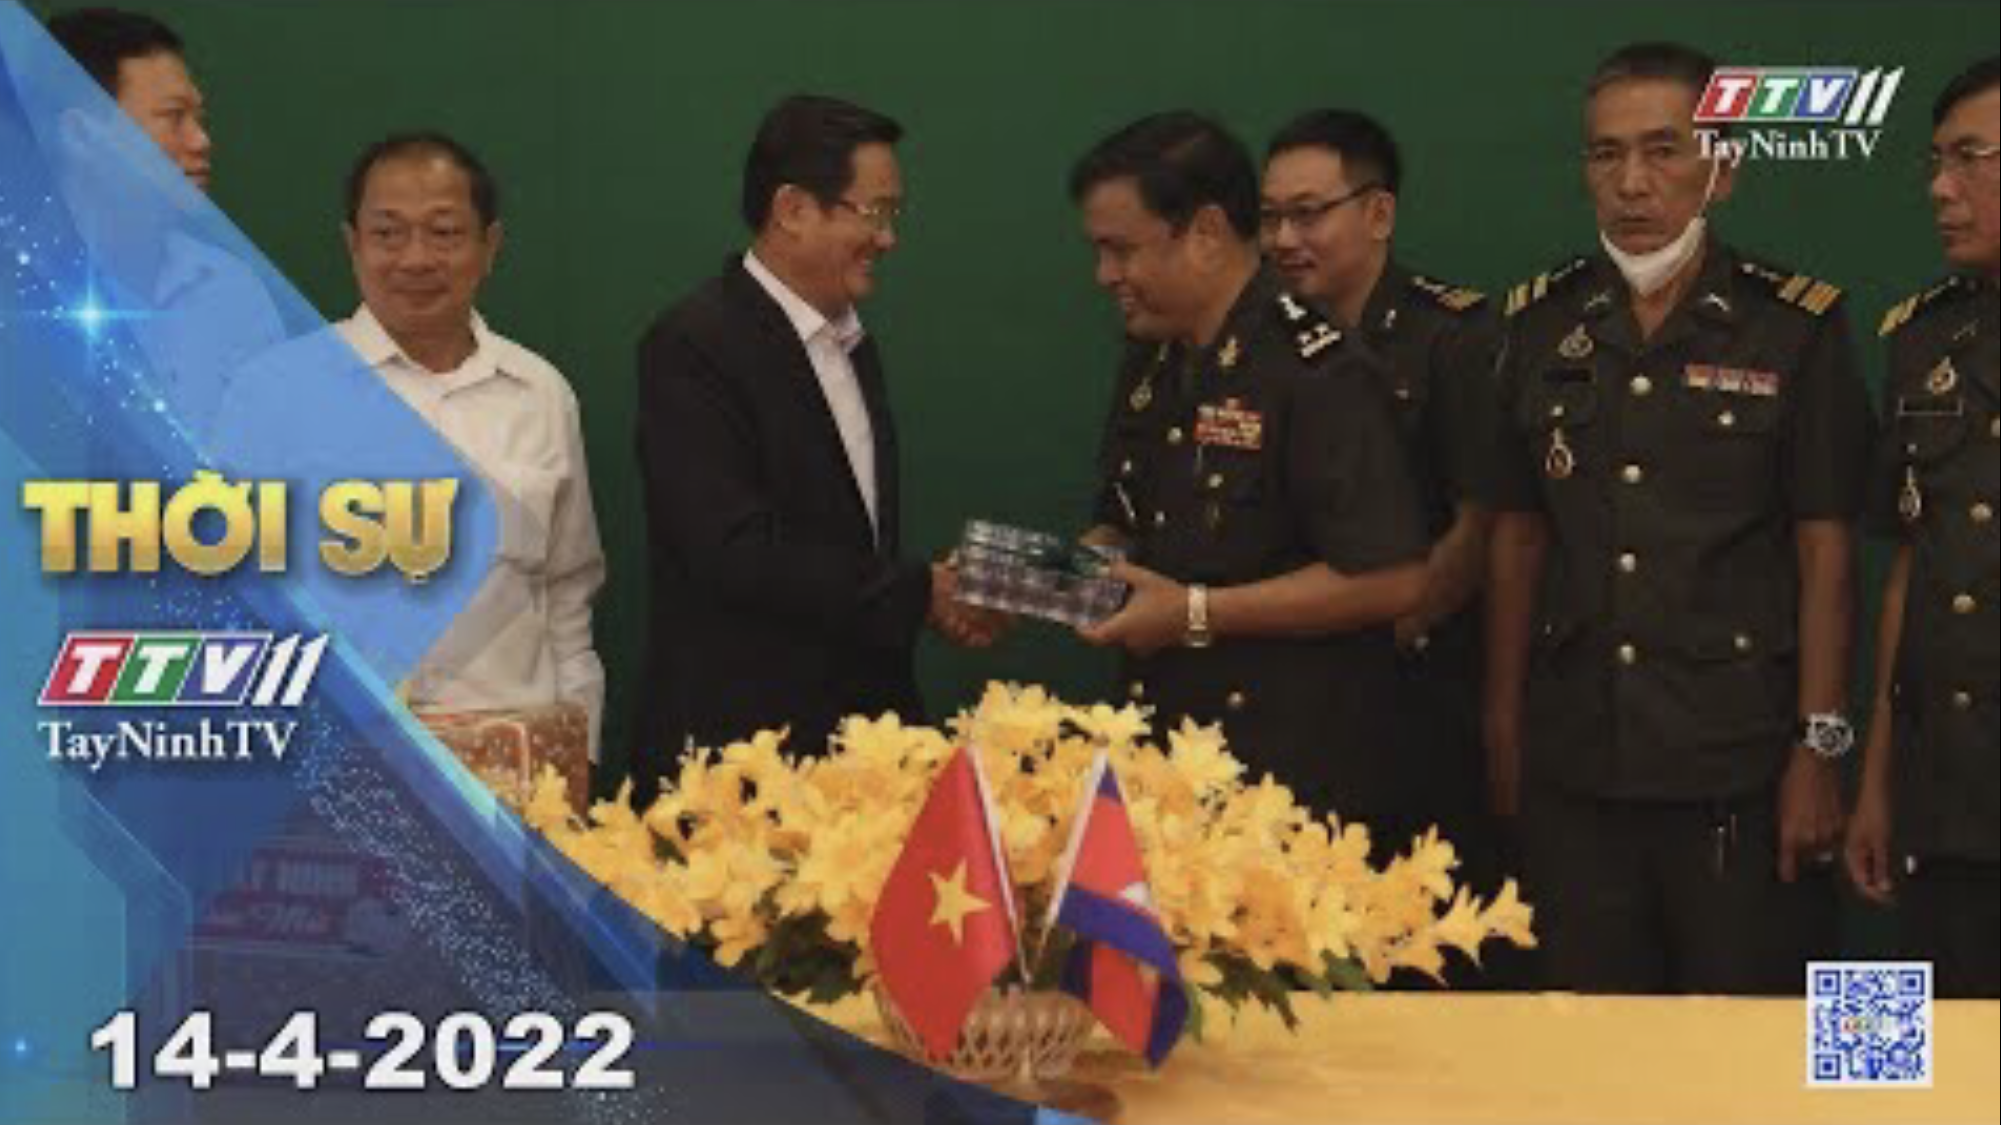 Thời sự Tây Ninh 14-4-2022 | Tin tức hôm nay | TayNinhTV